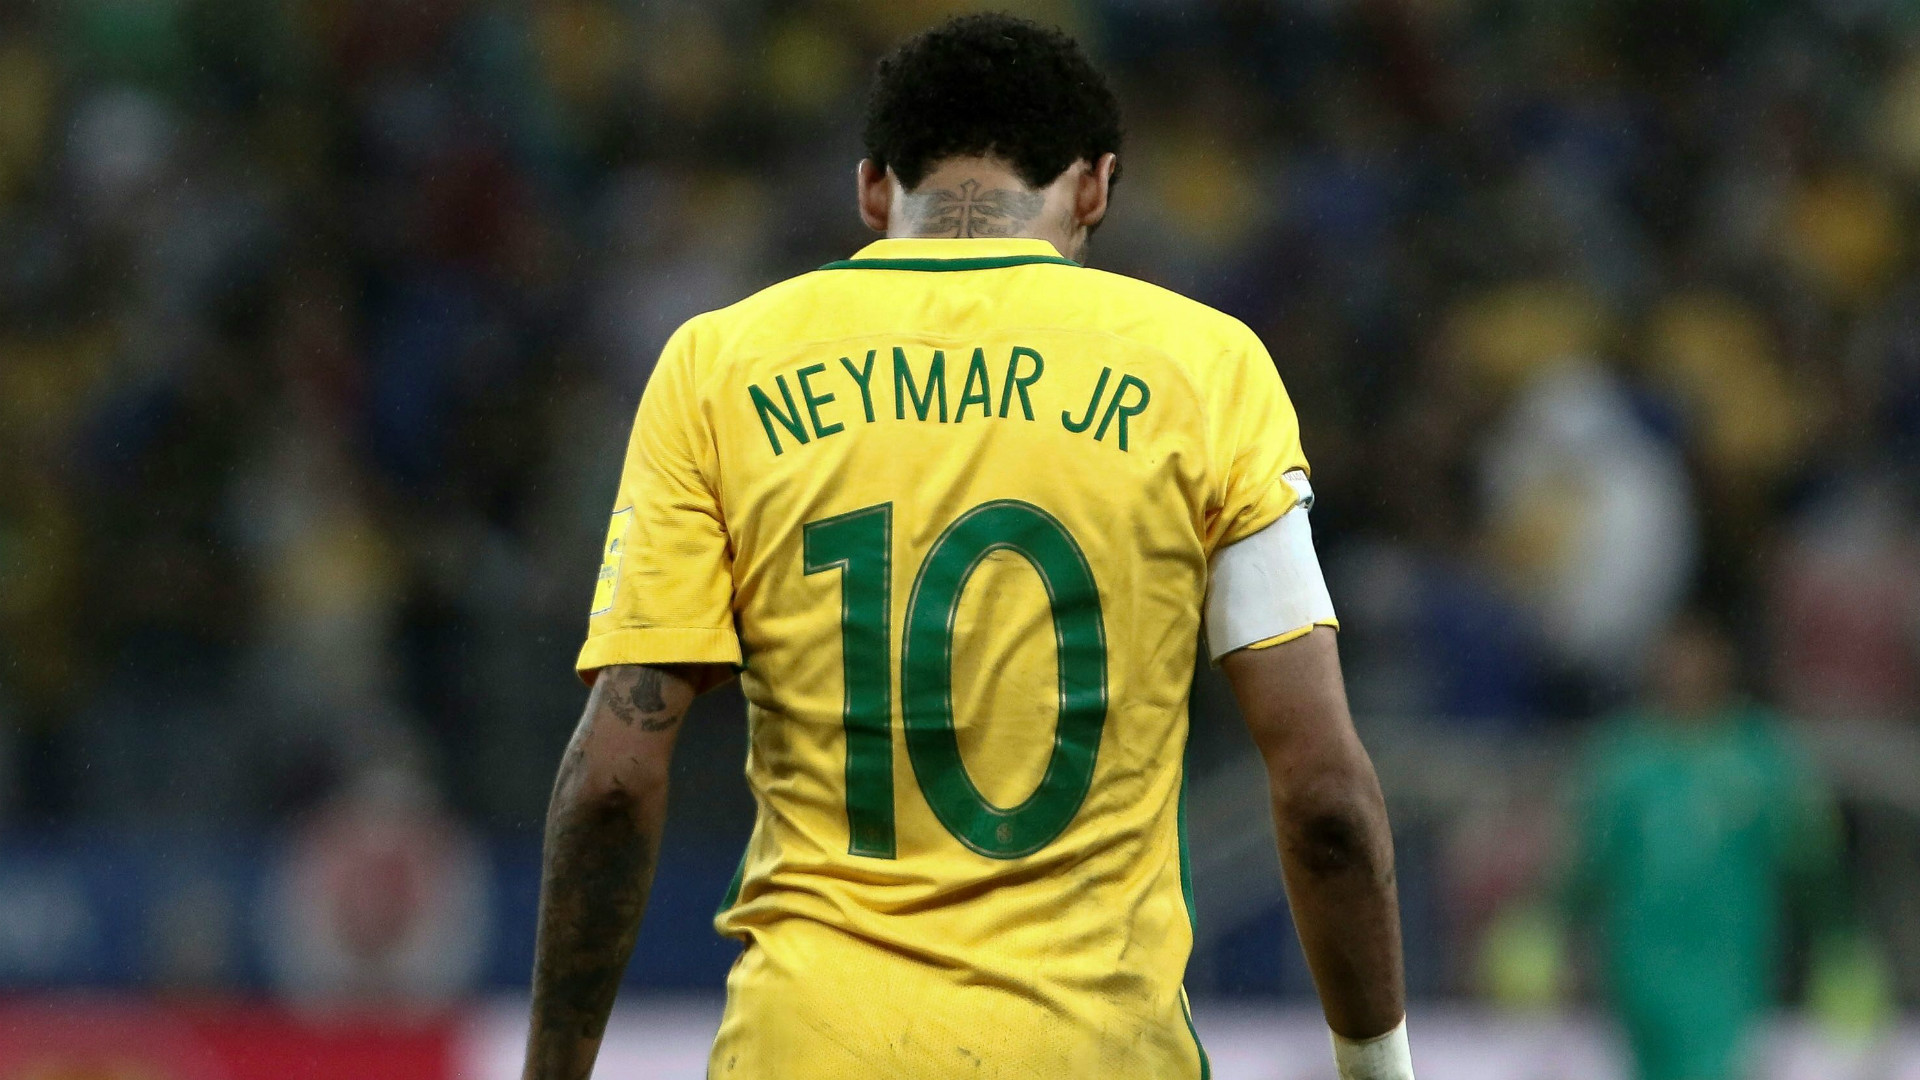 foto neymar jr wallpaper,player,football player,soccer player,team sport,yellow